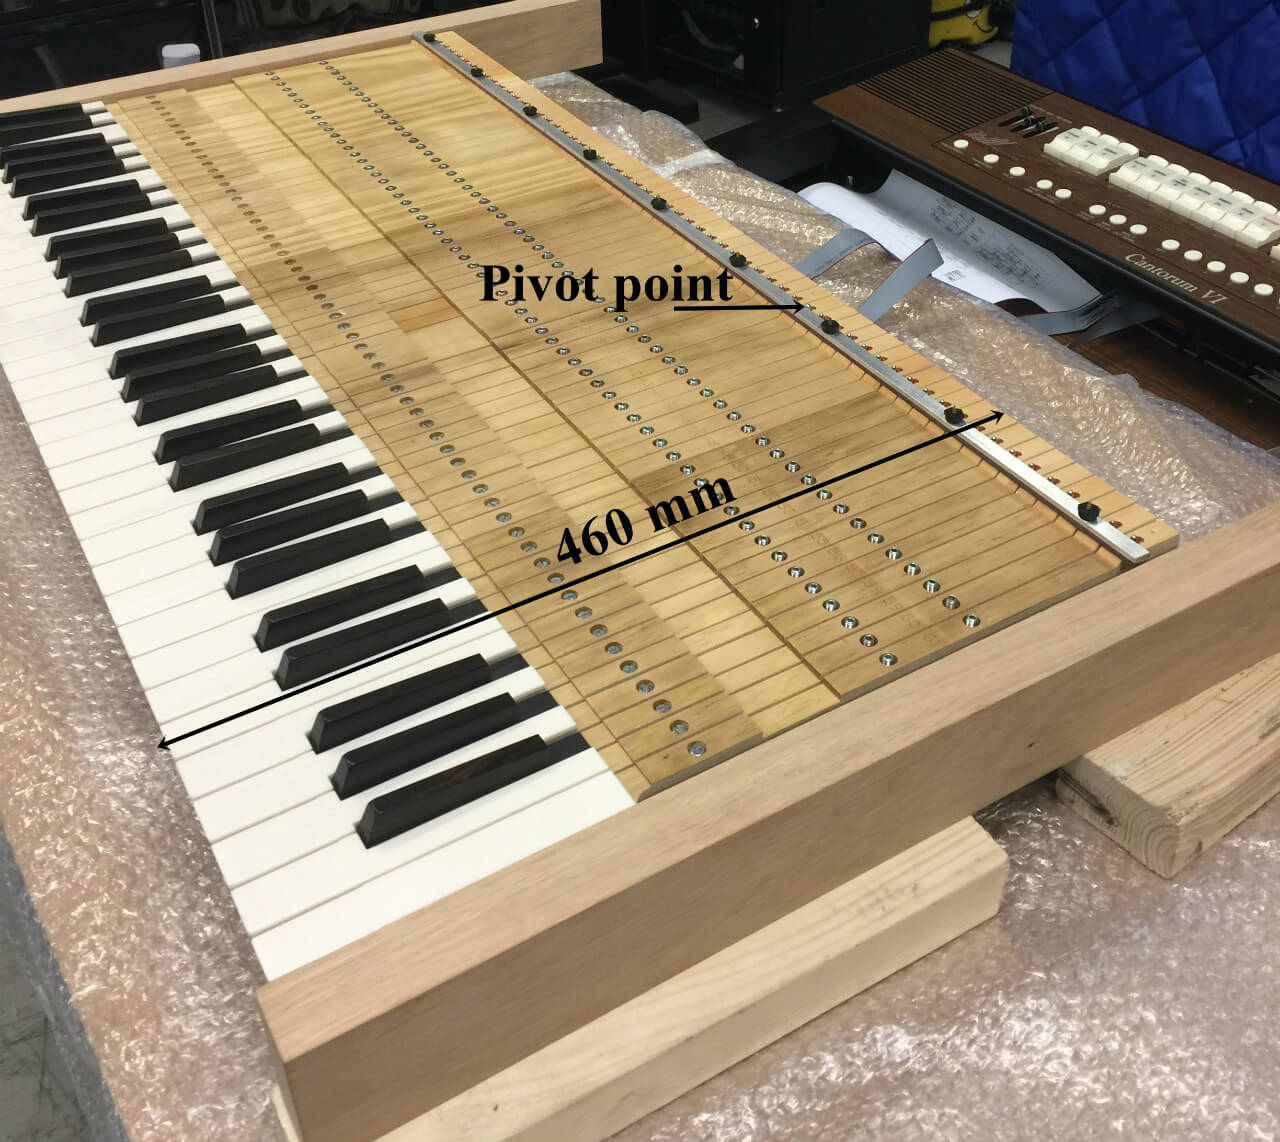 P&S Keyboard Pivot Point